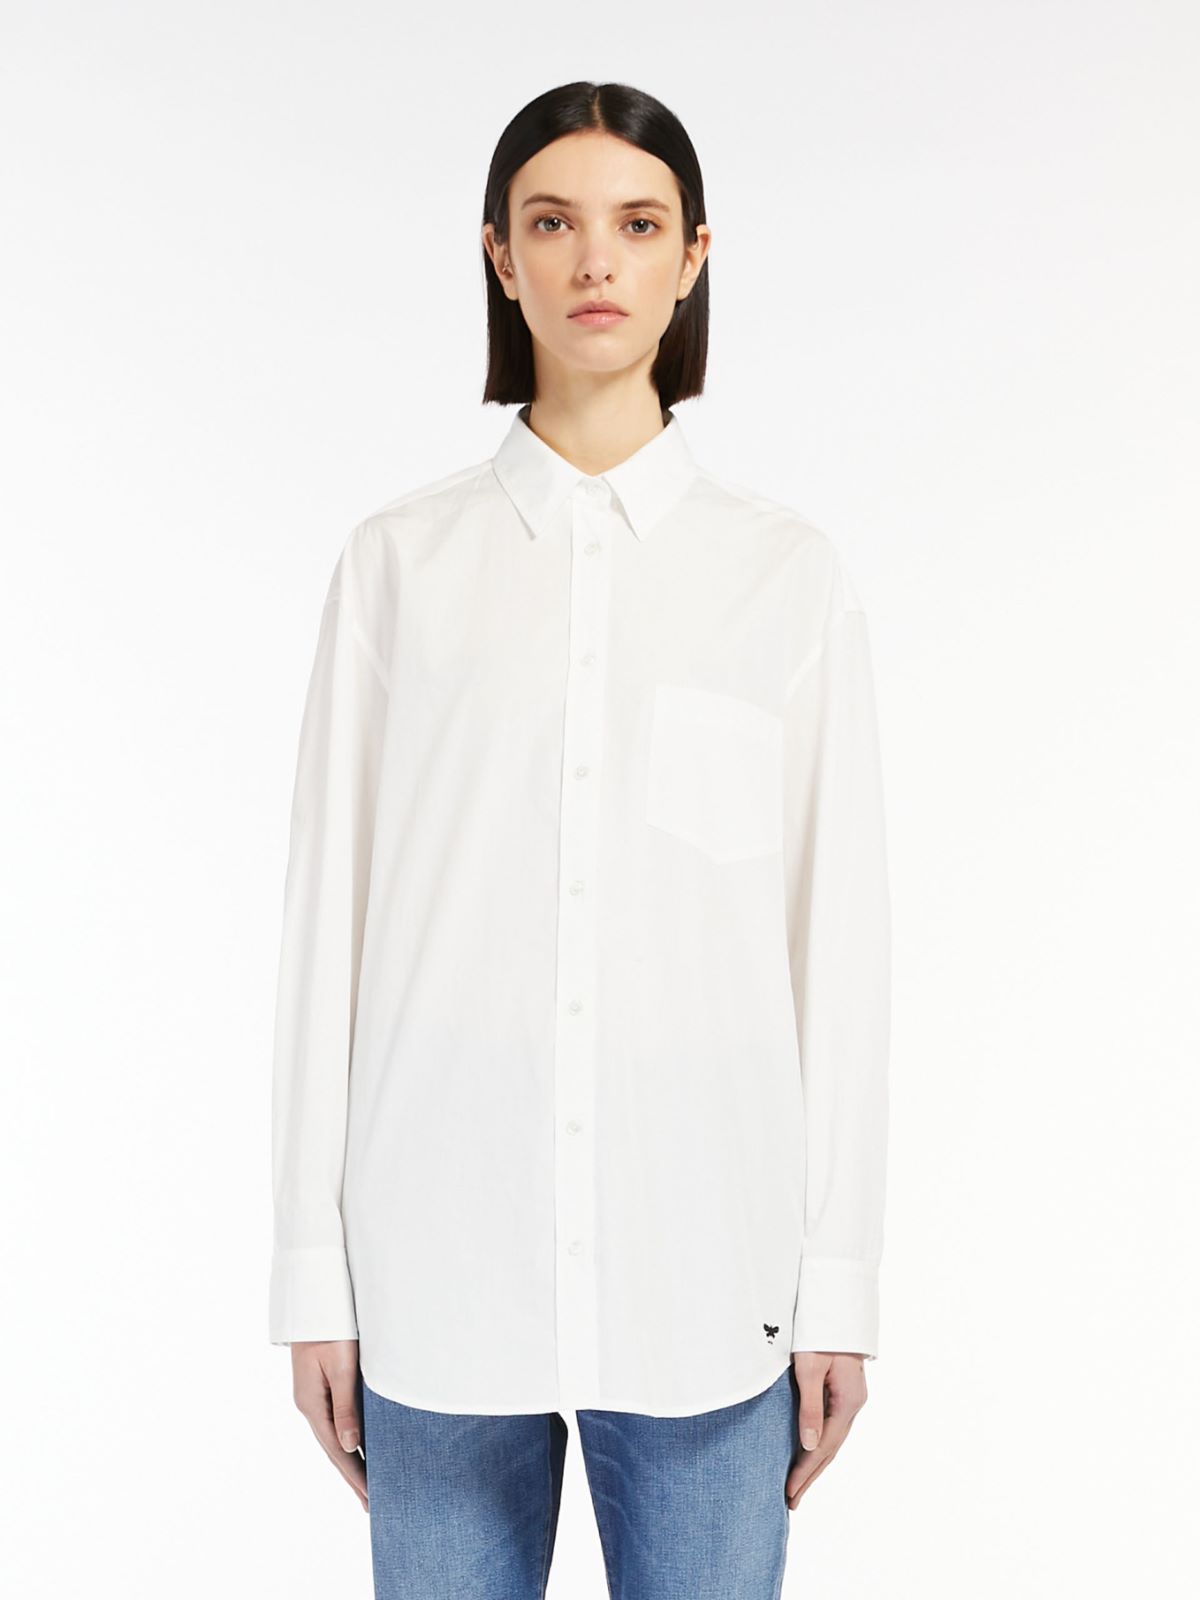 Cotton poplin shirt - OPTICAL WHITE - Weekend Max Mara - 2